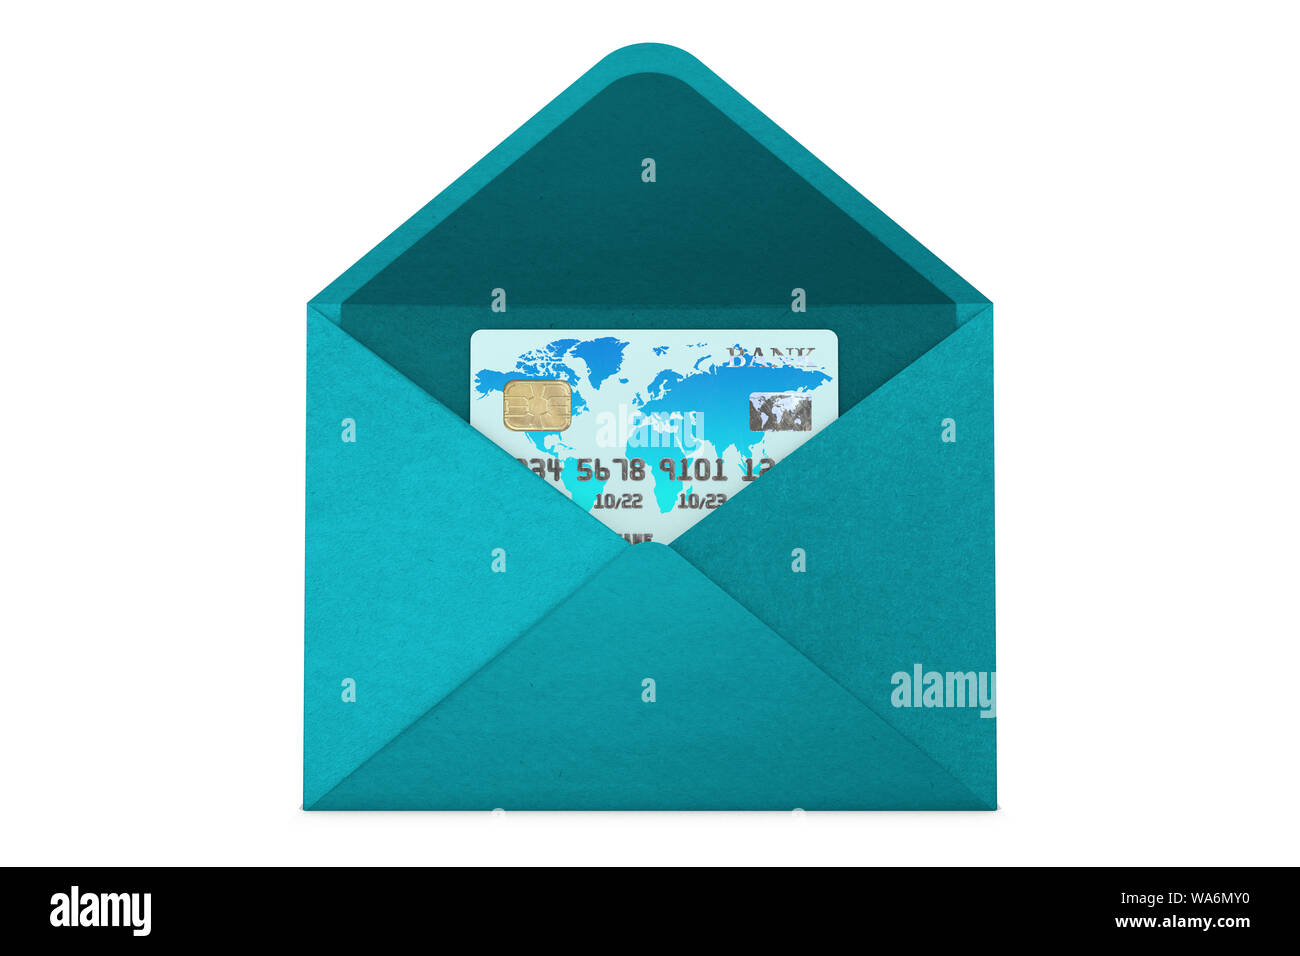 3D-Illustration: Kreditkarte mit einem elektronischen Chip ohne Angabe der Marke und die Namen der Banken mit Weltkarte blau-blaue Farbe. Stockfoto